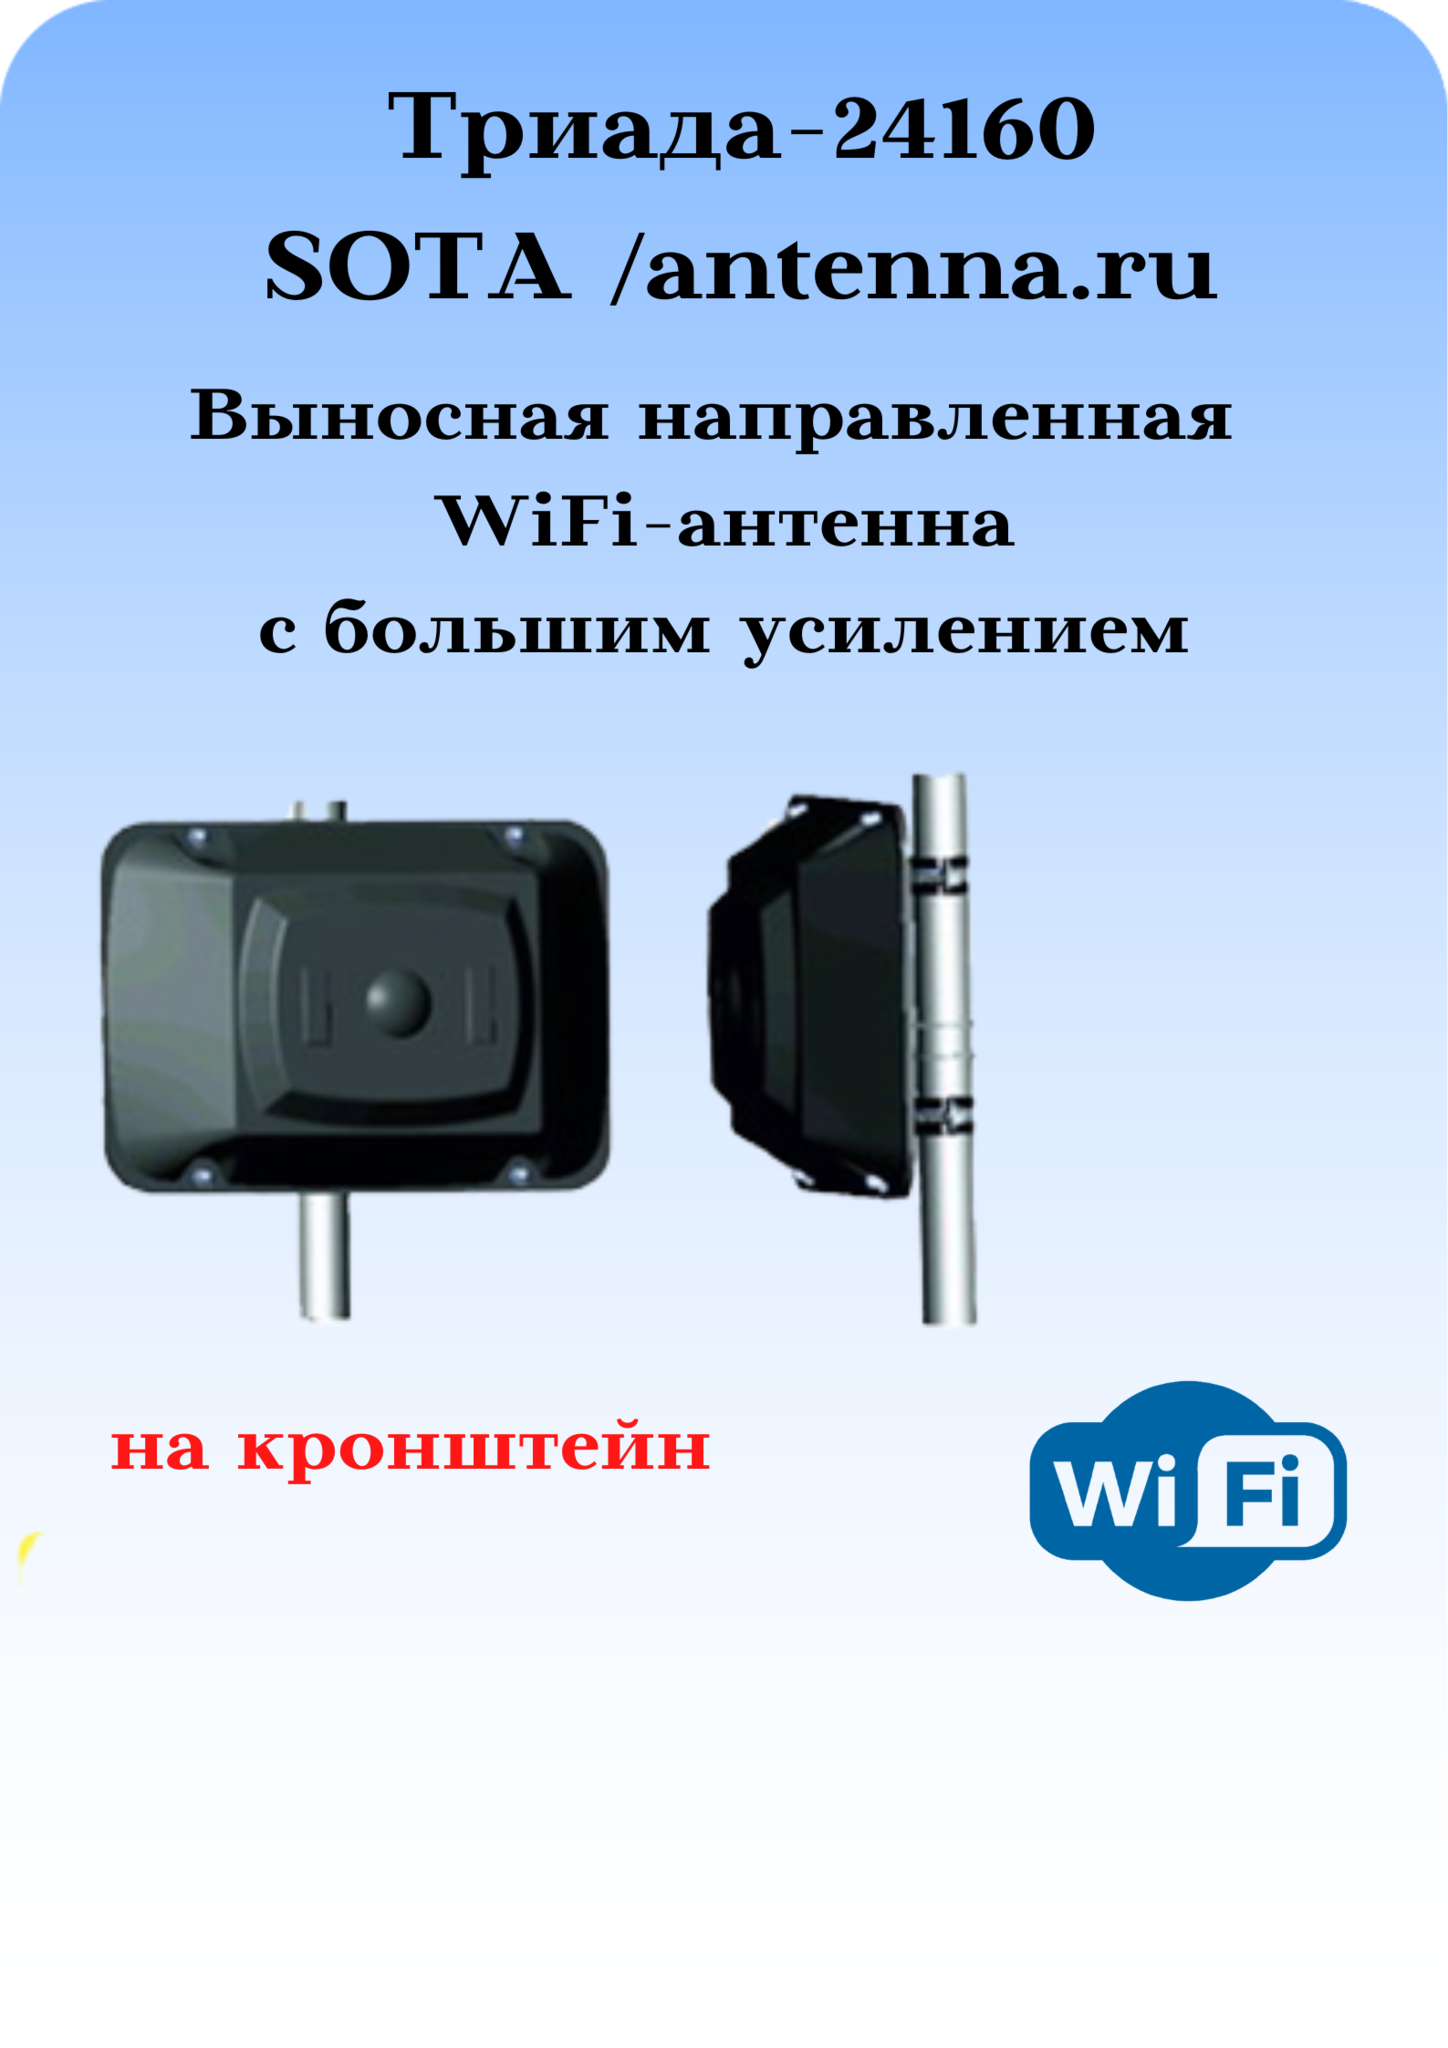 Триада-24160 SOTA/antenna.ru. Антенна WiFi направленная на кронштейн с большим усилением